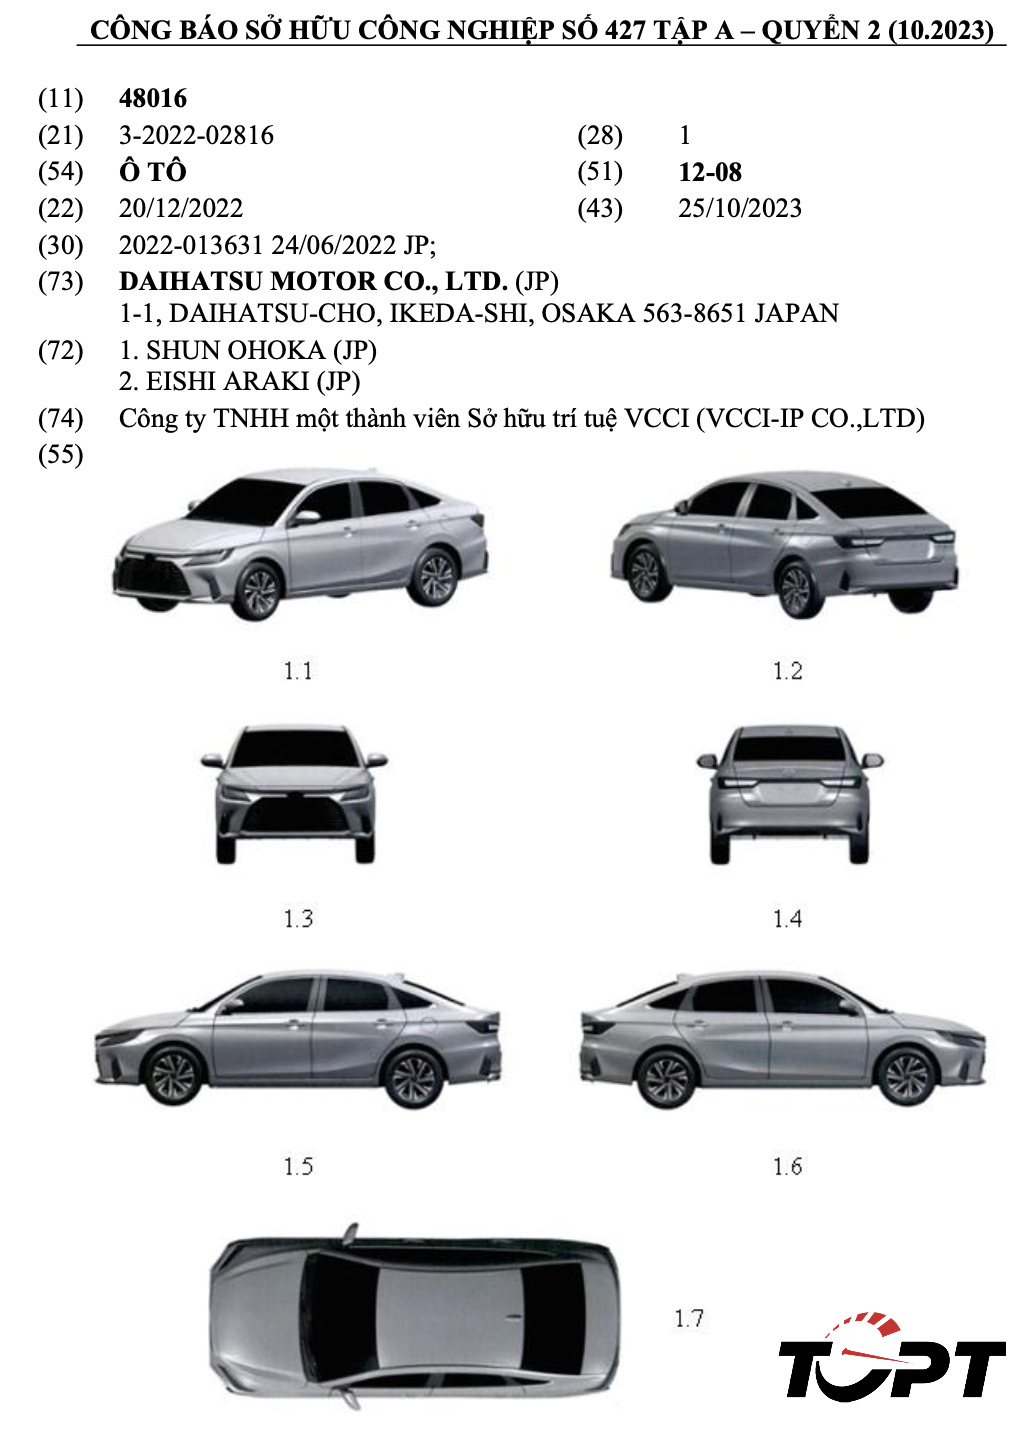 <span style="font-size:12px;"><span style="color:#2980b9;"><em>Kiểu dáng công nghiệp Toyota Vios thế hệ mới được đăng ký tại Việt Nam. Ảnh: TGPT</em></span></span><br>